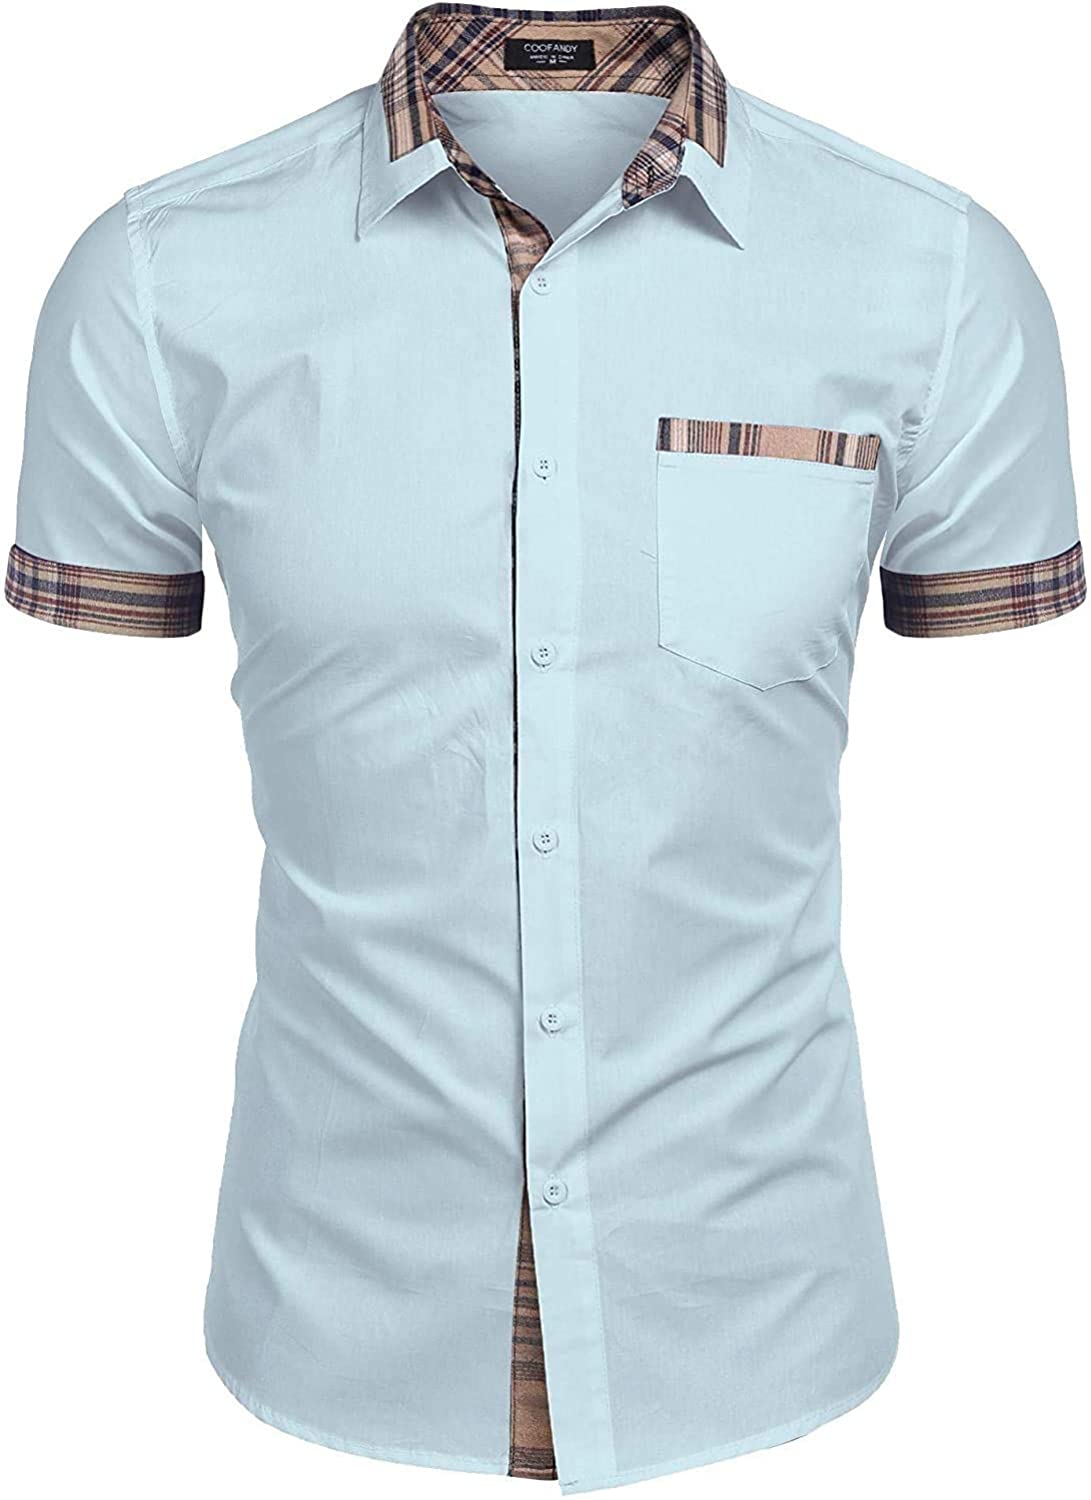 COOFANDY Men's Casual Cotton Short Sleeve Dress Shirt Plaid Collar Button Down Shirt 